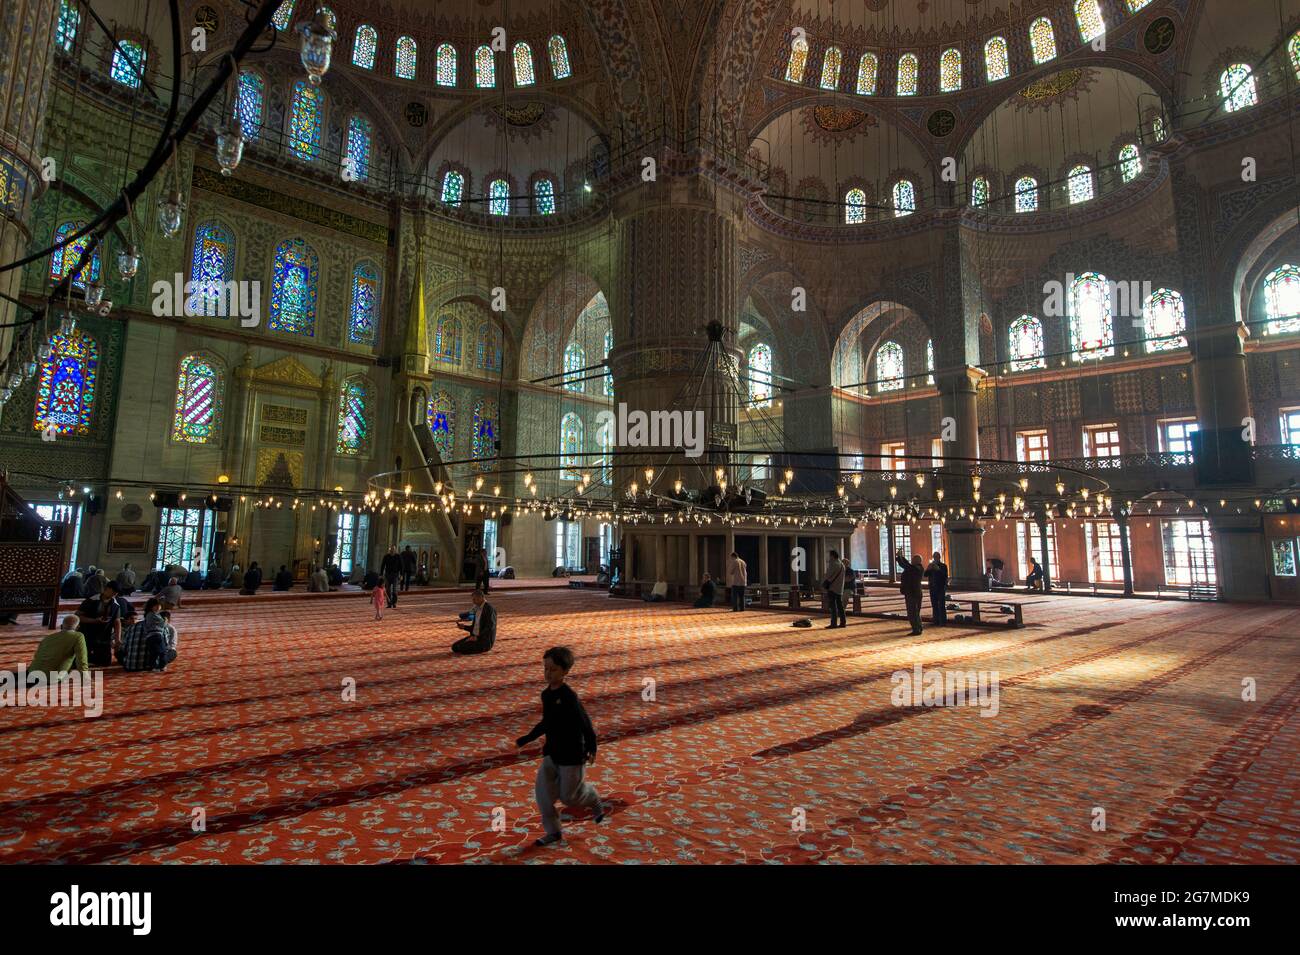 Die Sultan-Ahmed-Moschee, auch als Blaue Moschee bekannt, ist eine Moschee aus der osmanischen Zeit in Istanbul, Türkei. Eine funktionierende Moschee, zieht es auch große Stockfoto